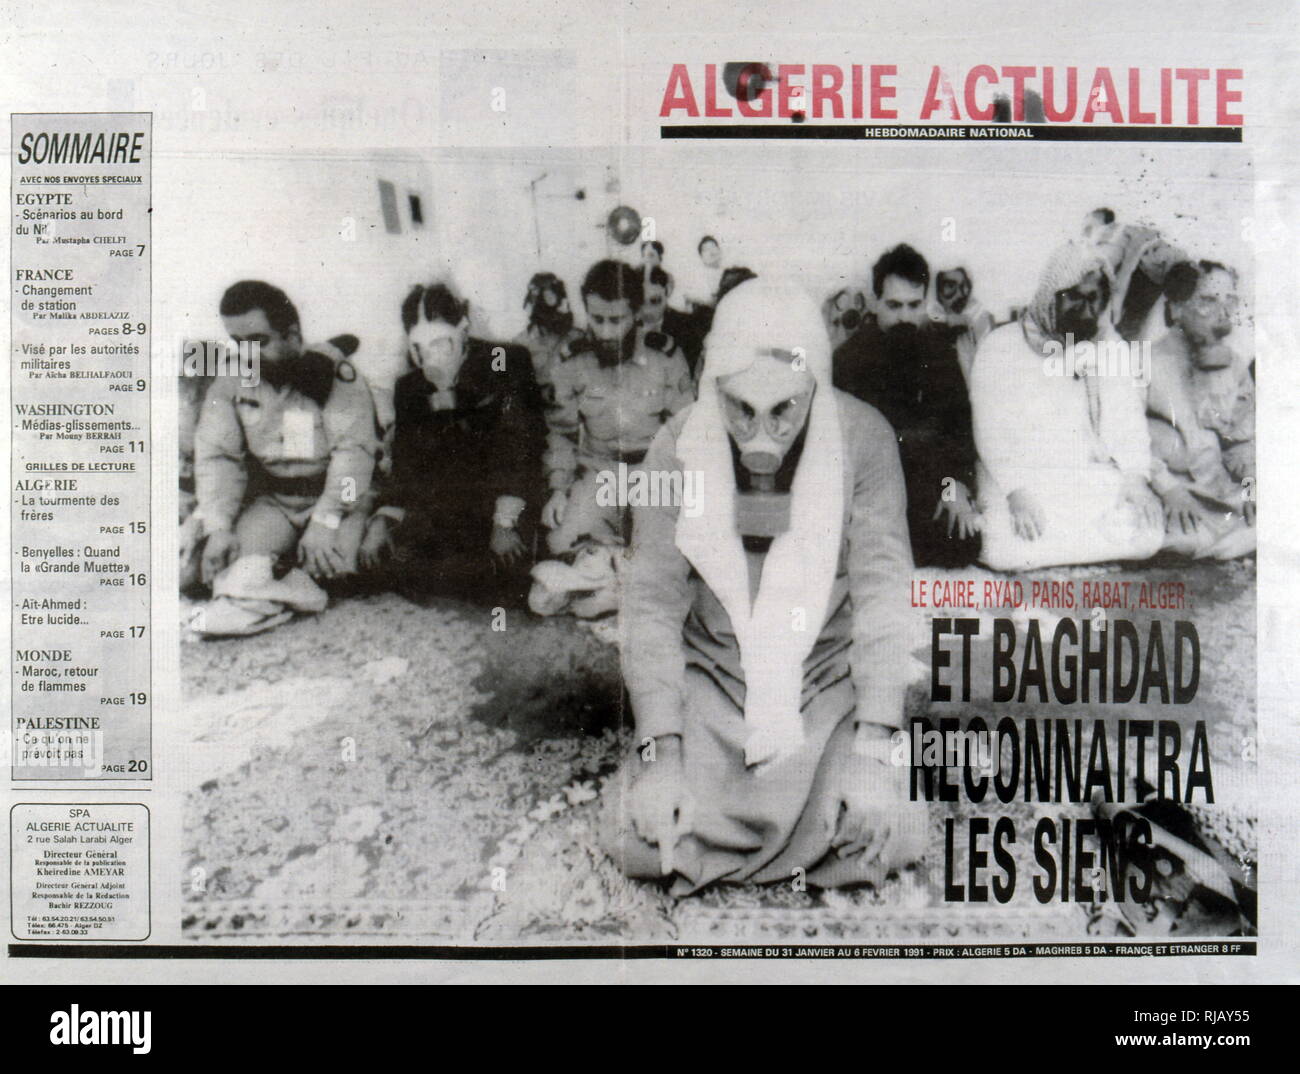 Couverture de magazine français algérien représentant des Arabes dans des masques à gaz pendant la guerre du Golfe de 1991 au Koweït et l'Iraq Banque D'Images